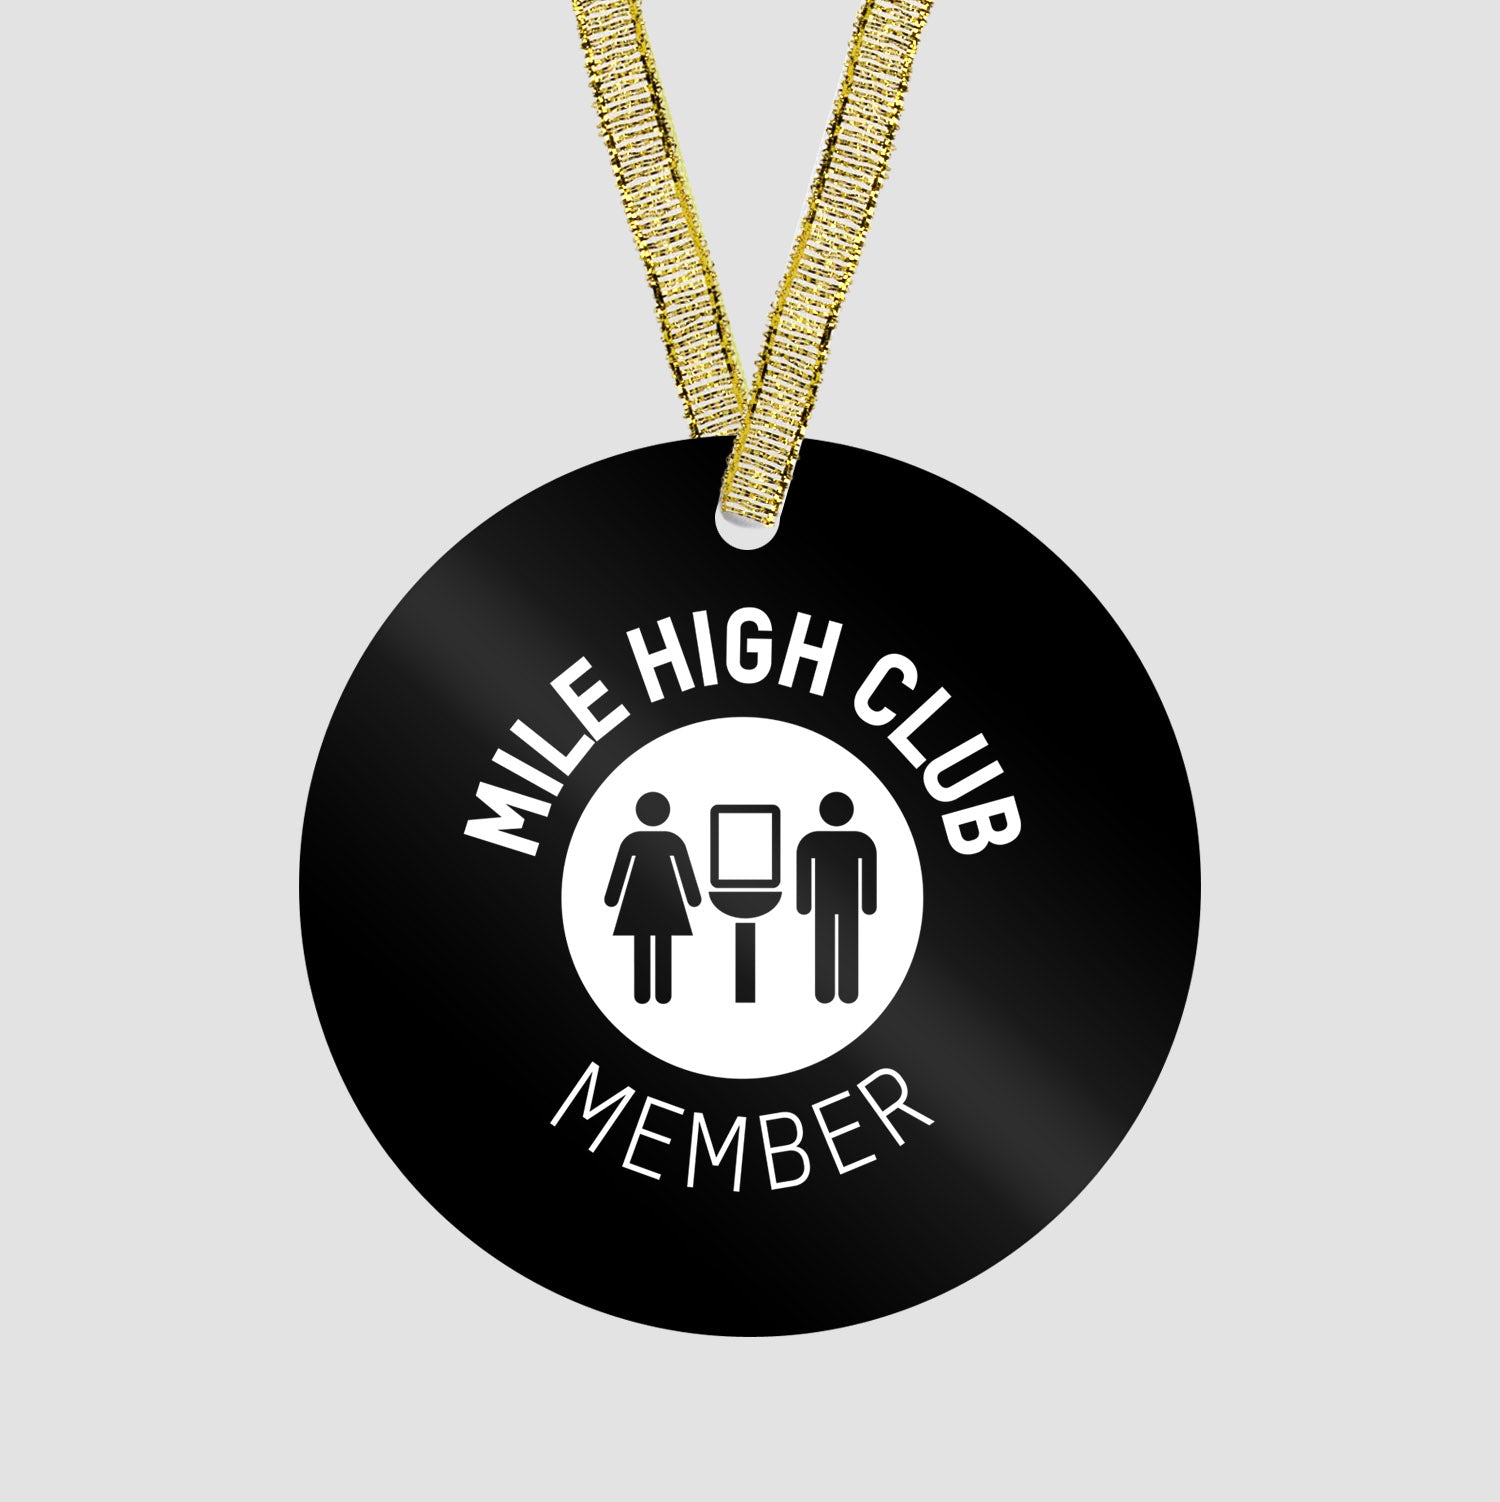 Mile High Club - Ornament - Airportag